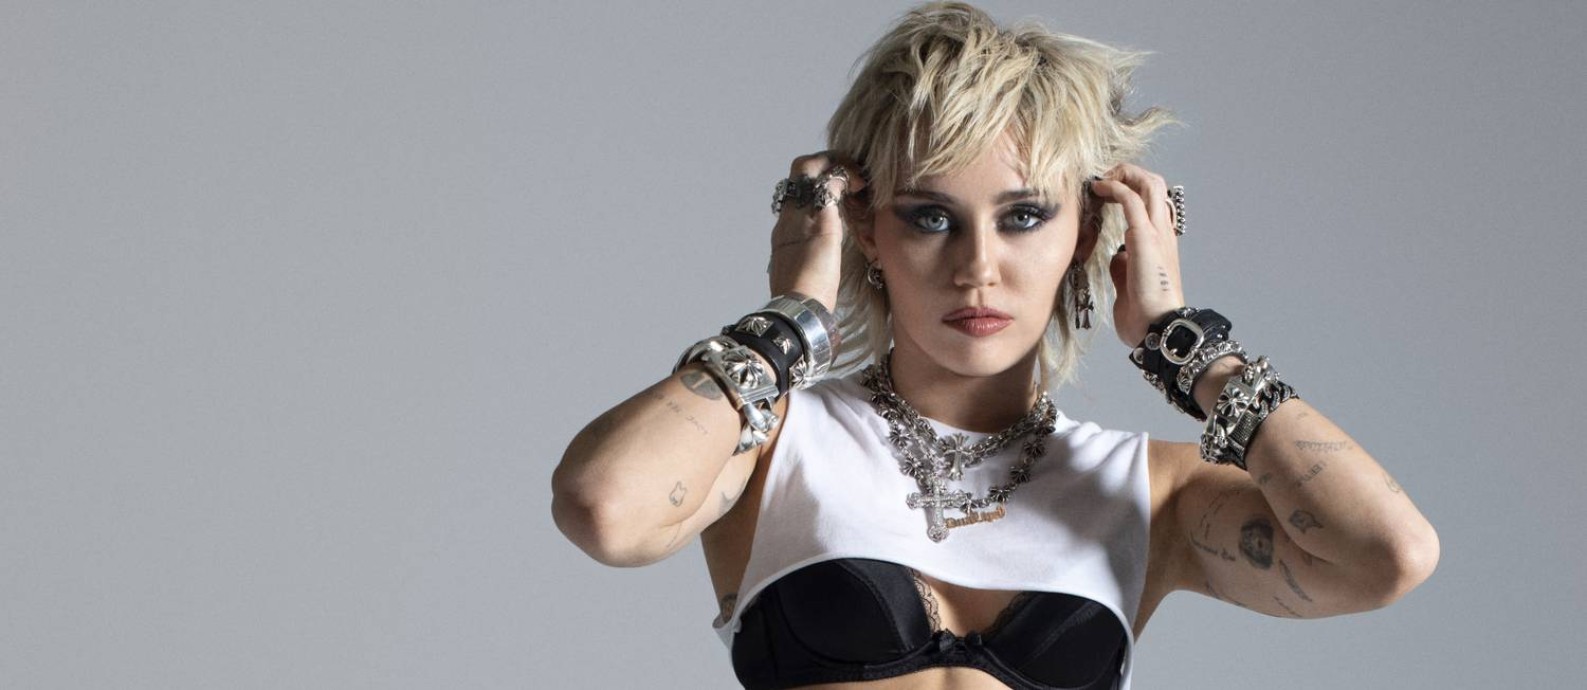 Miley Cyrus lança novo disco, 'Plastic hearts' Foto: Divulgação